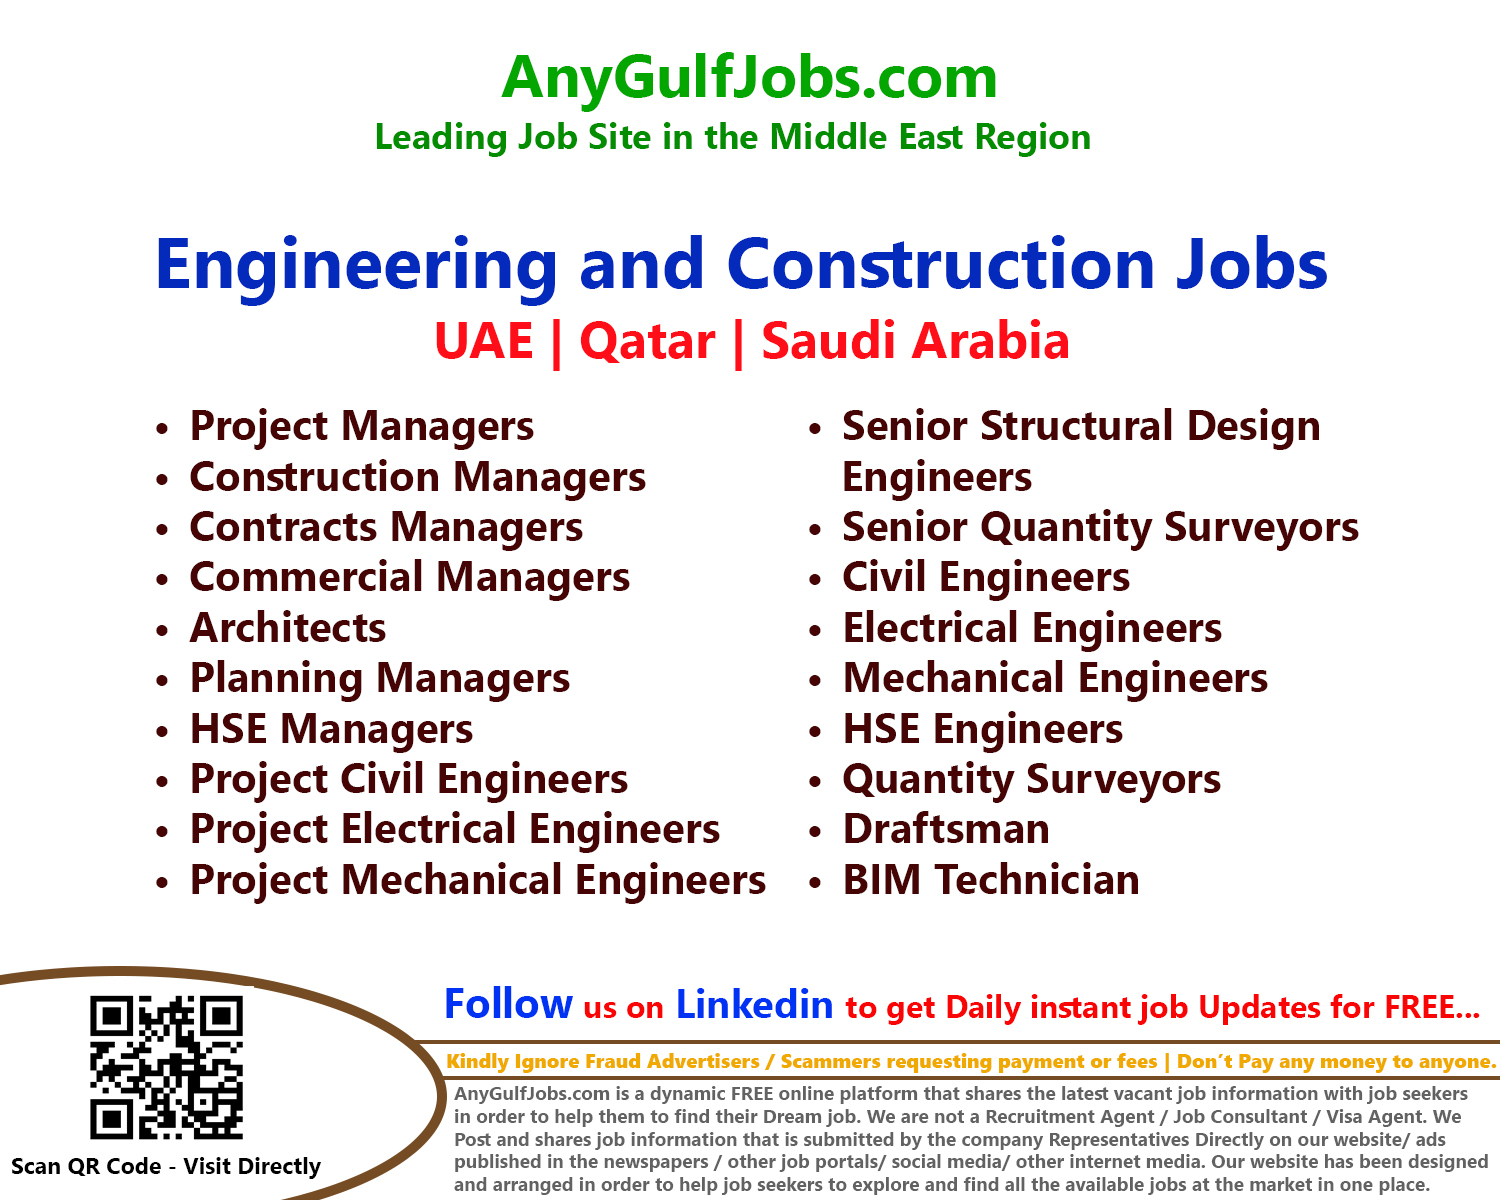 Engineering and Construction Jobs in Dubai - UAE | Doha, Qatar | Saudi Arabia